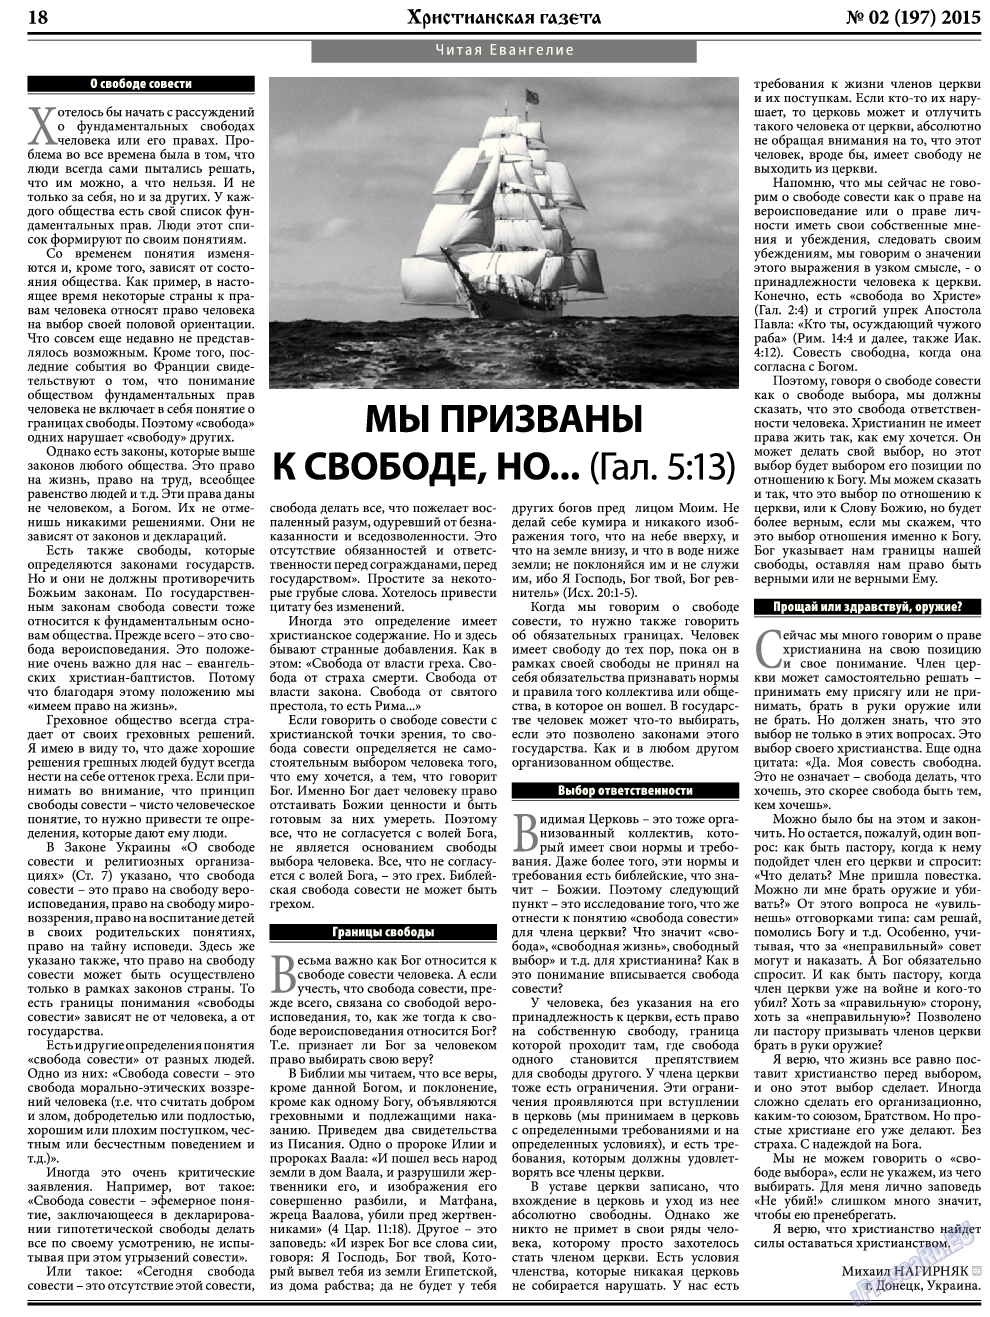 Христианская газета, газета. 2015 №2 стр.26